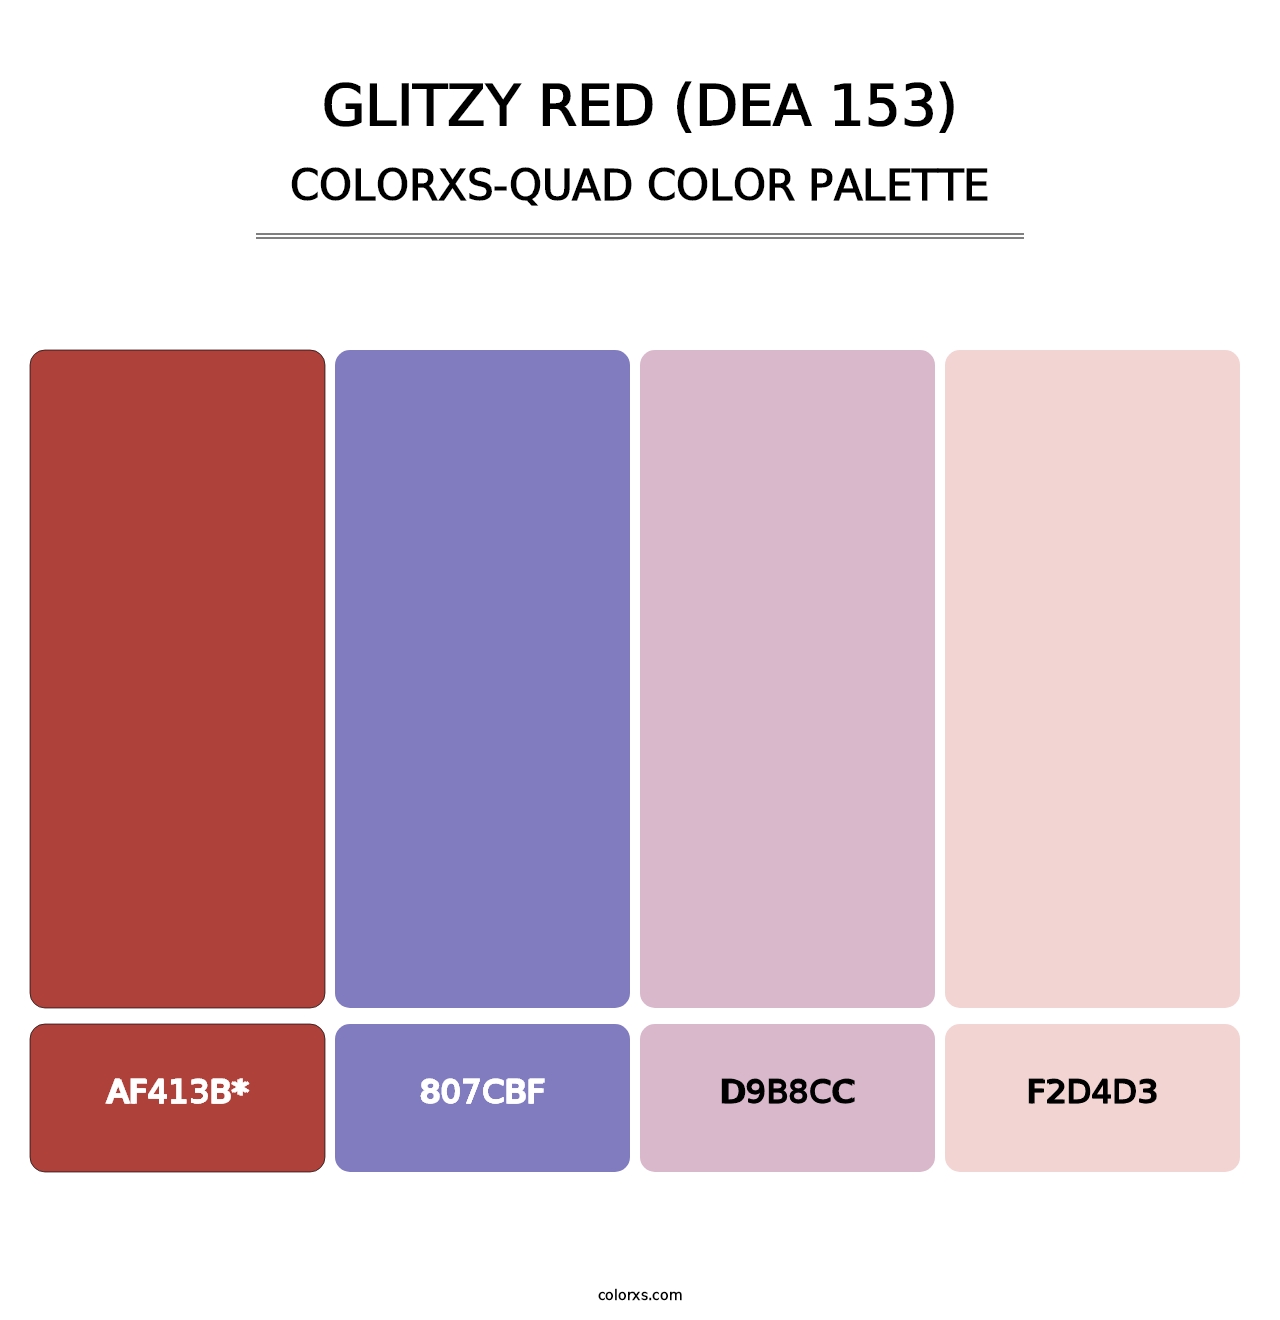 Glitzy Red (DEA 153) - Colorxs Quad Palette